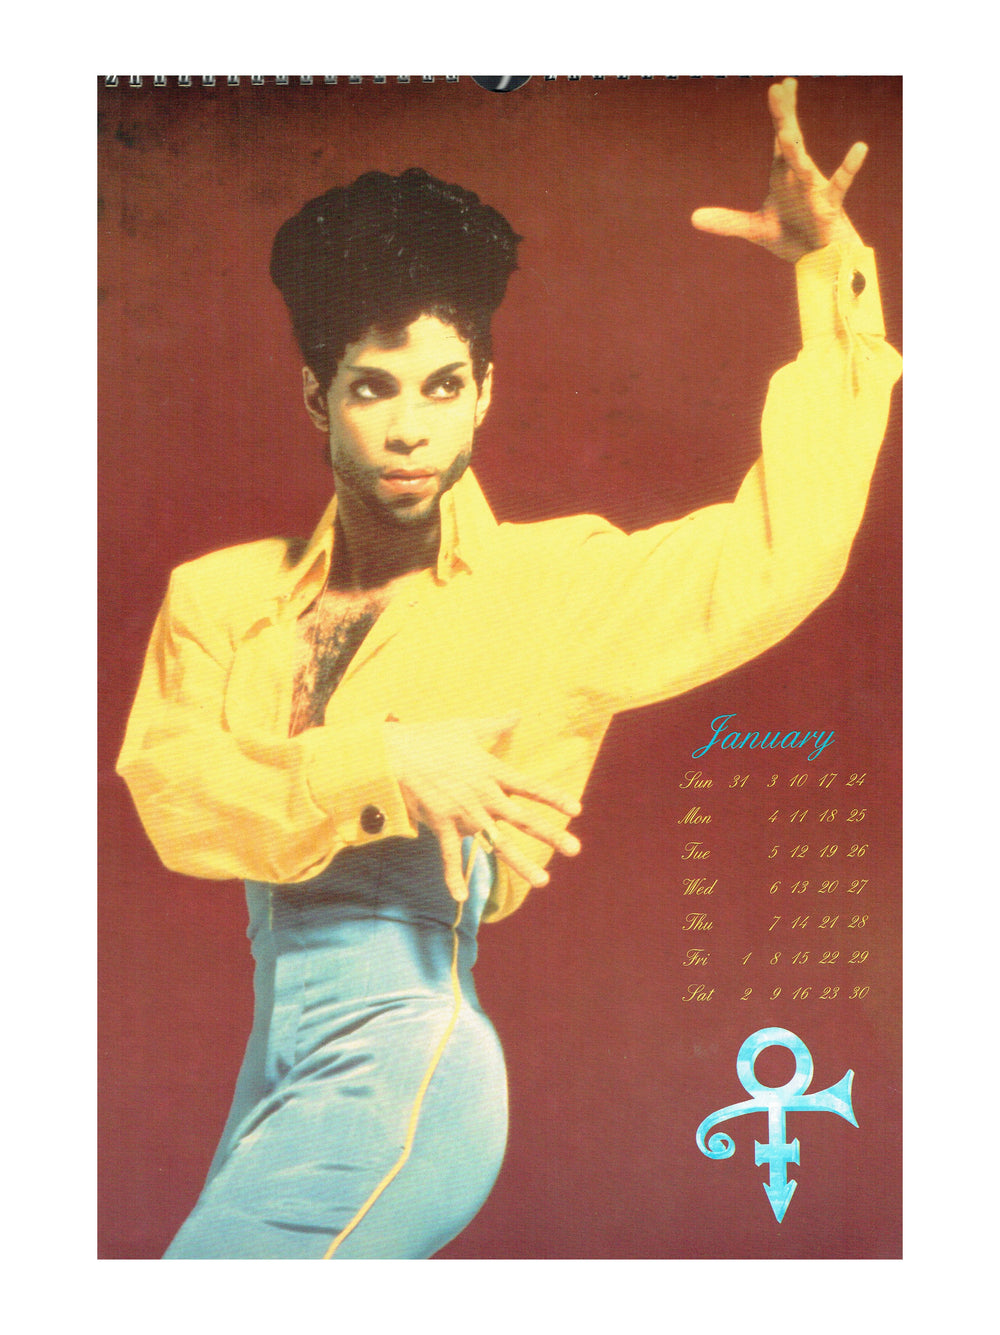 Prince – Official Paisley Park Brockum Calendar 1993